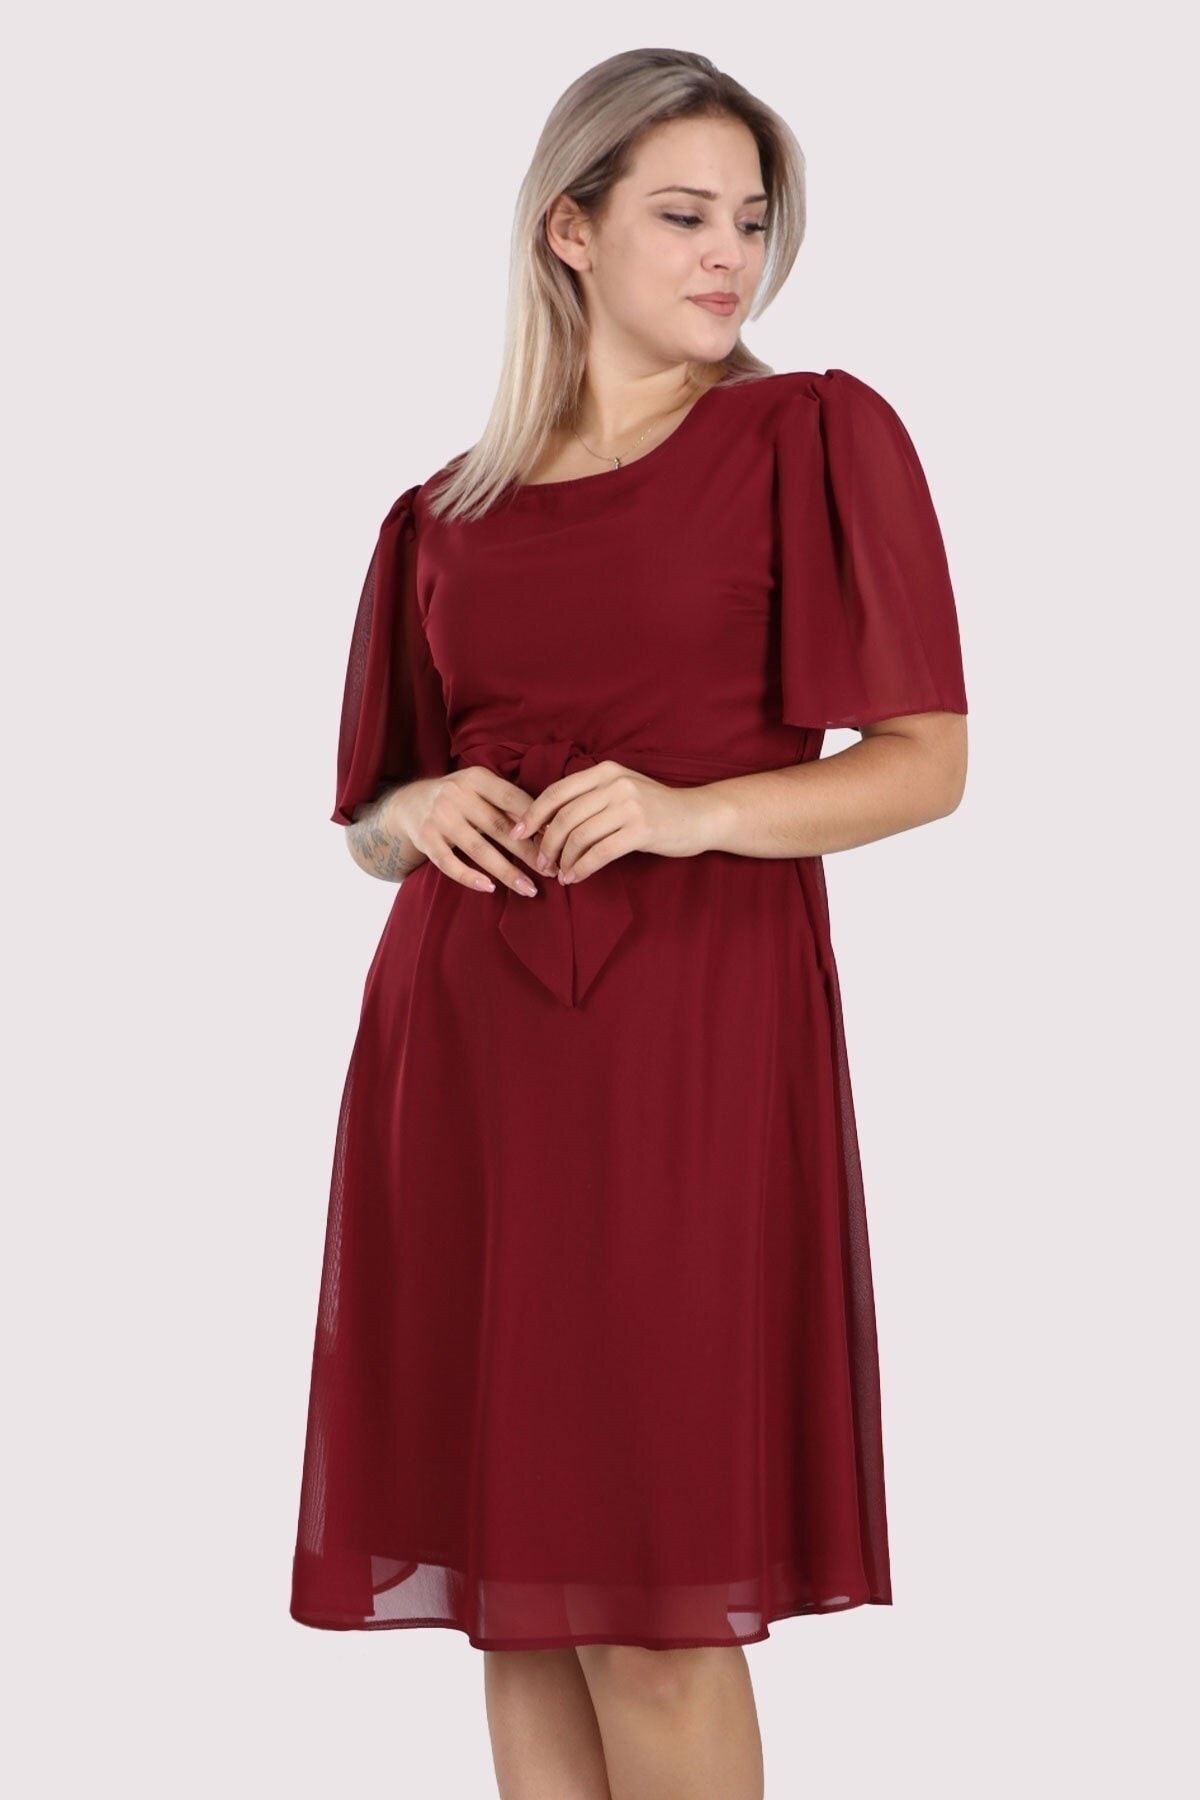 apsen Kadın Büyük Beden Bağlama Detaylı Midi Şifon Elbise 4257/110